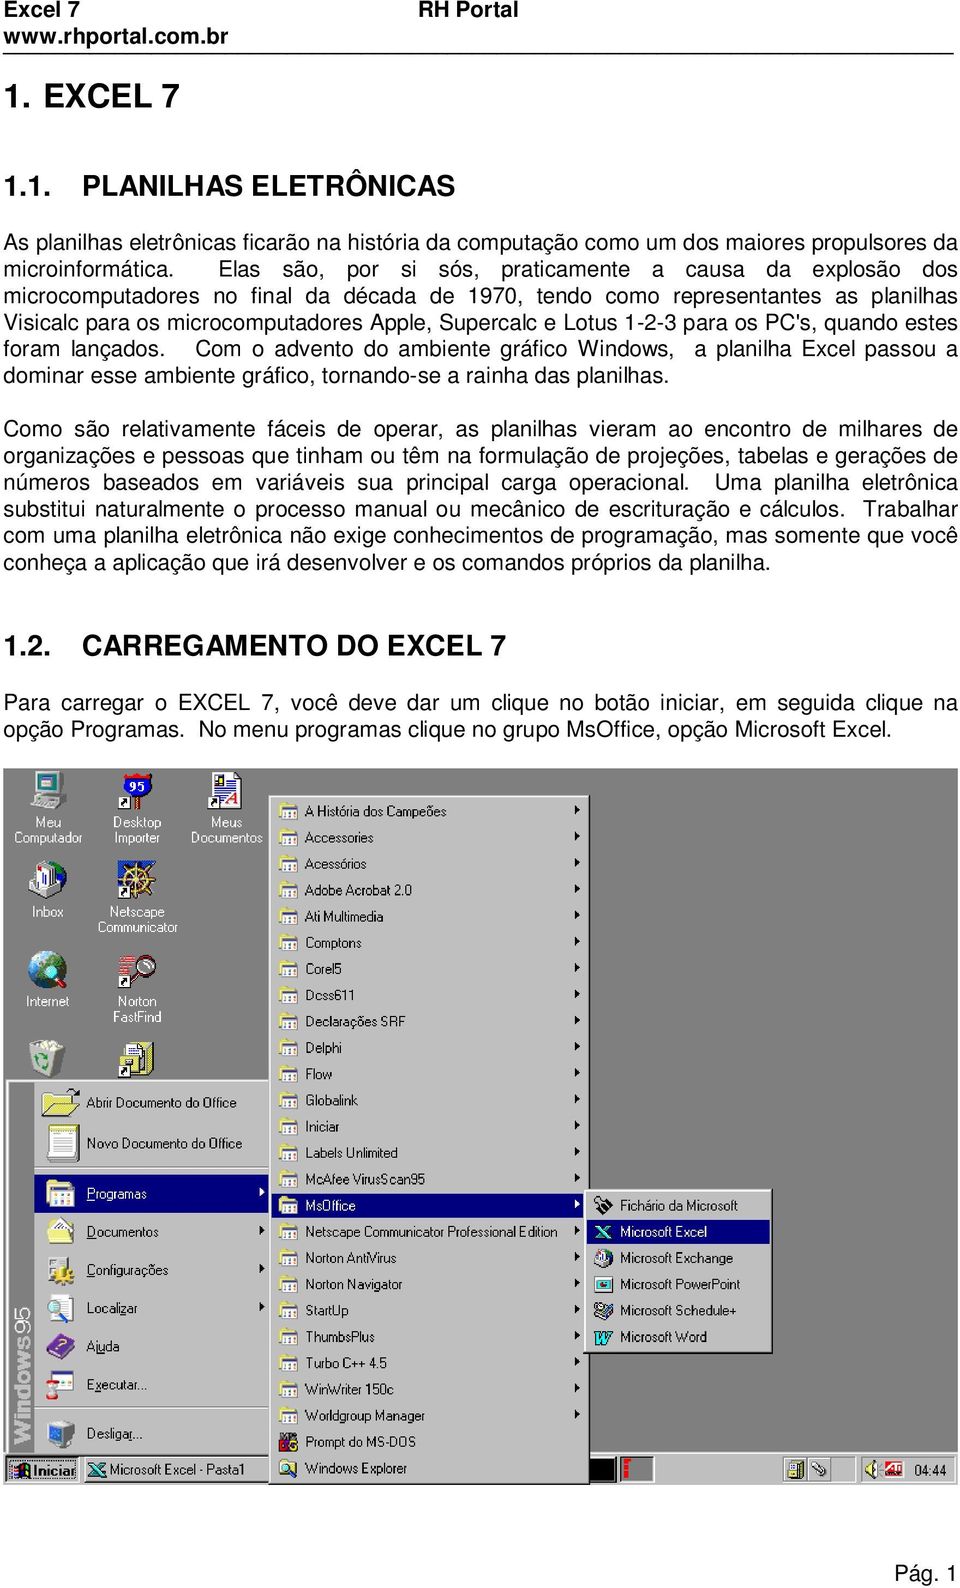 Lotus 1-2-3 para os PC's, quando estes foram lançados. Com o advento do ambiente gráfico Windows, a planilha Excel passou a dominar esse ambiente gráfico, tornando-se a rainha das planilhas.